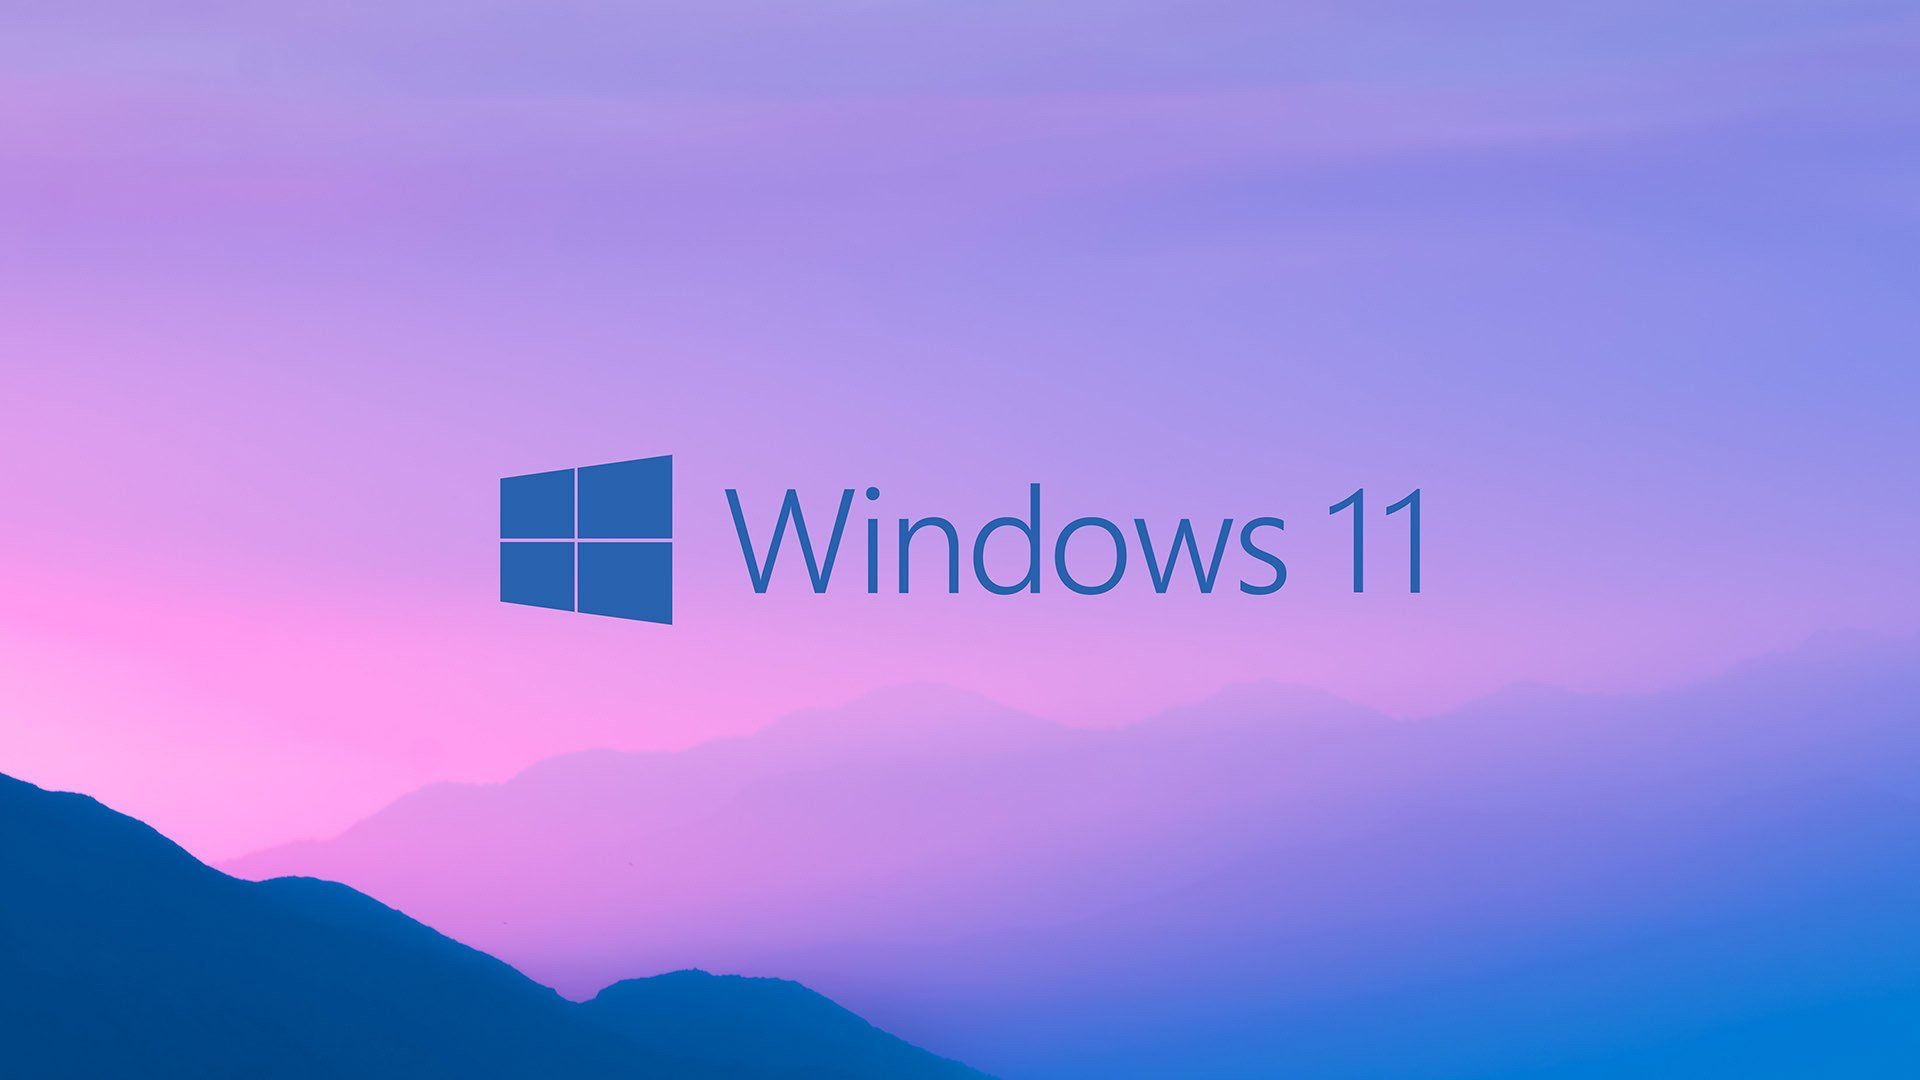 Hướng dẫn cài đặt Windows 11 đơn giản nhất hiện nay